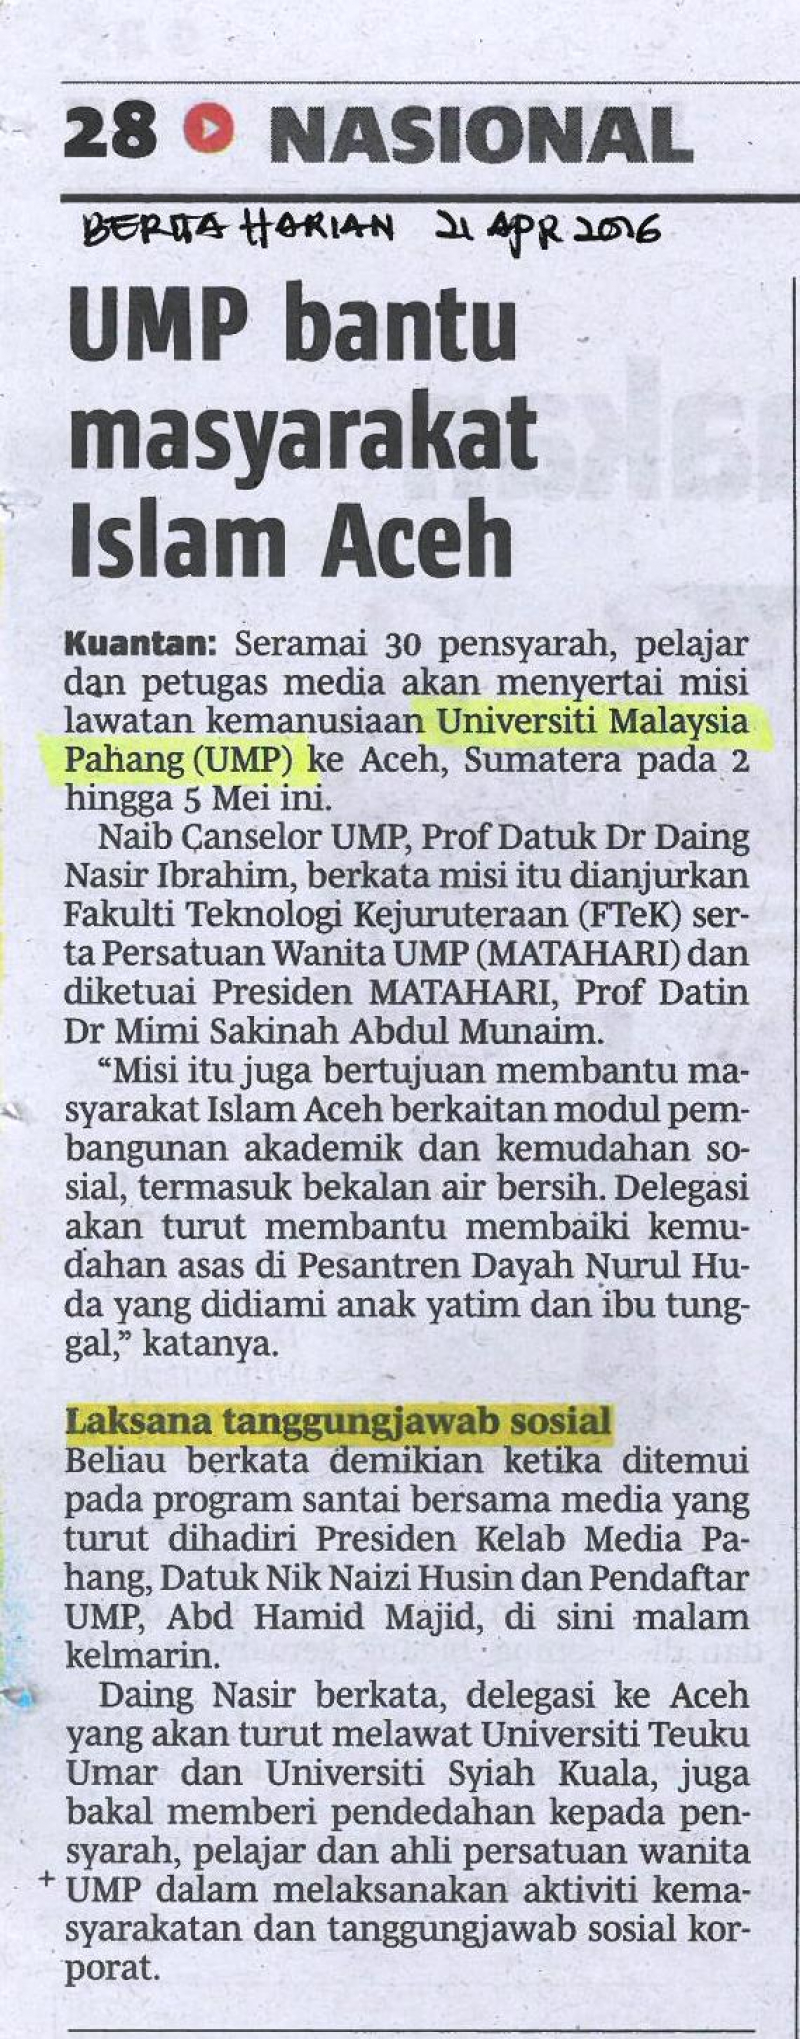 UMP bantu masyarakat Islam Aceh